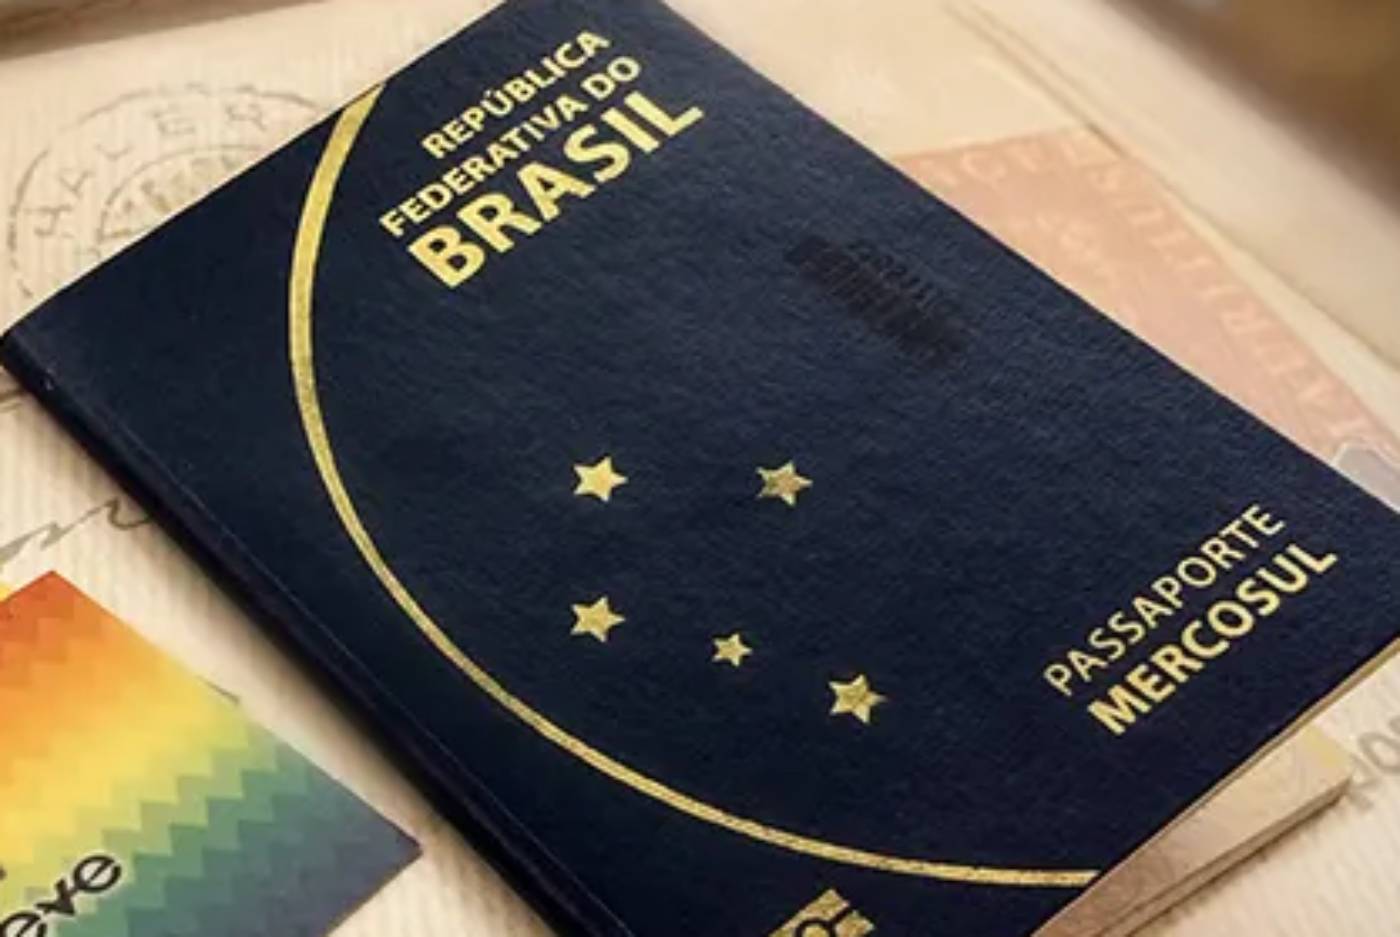 Passaporte Brasileiro - Como planejar um mochilão pela europa